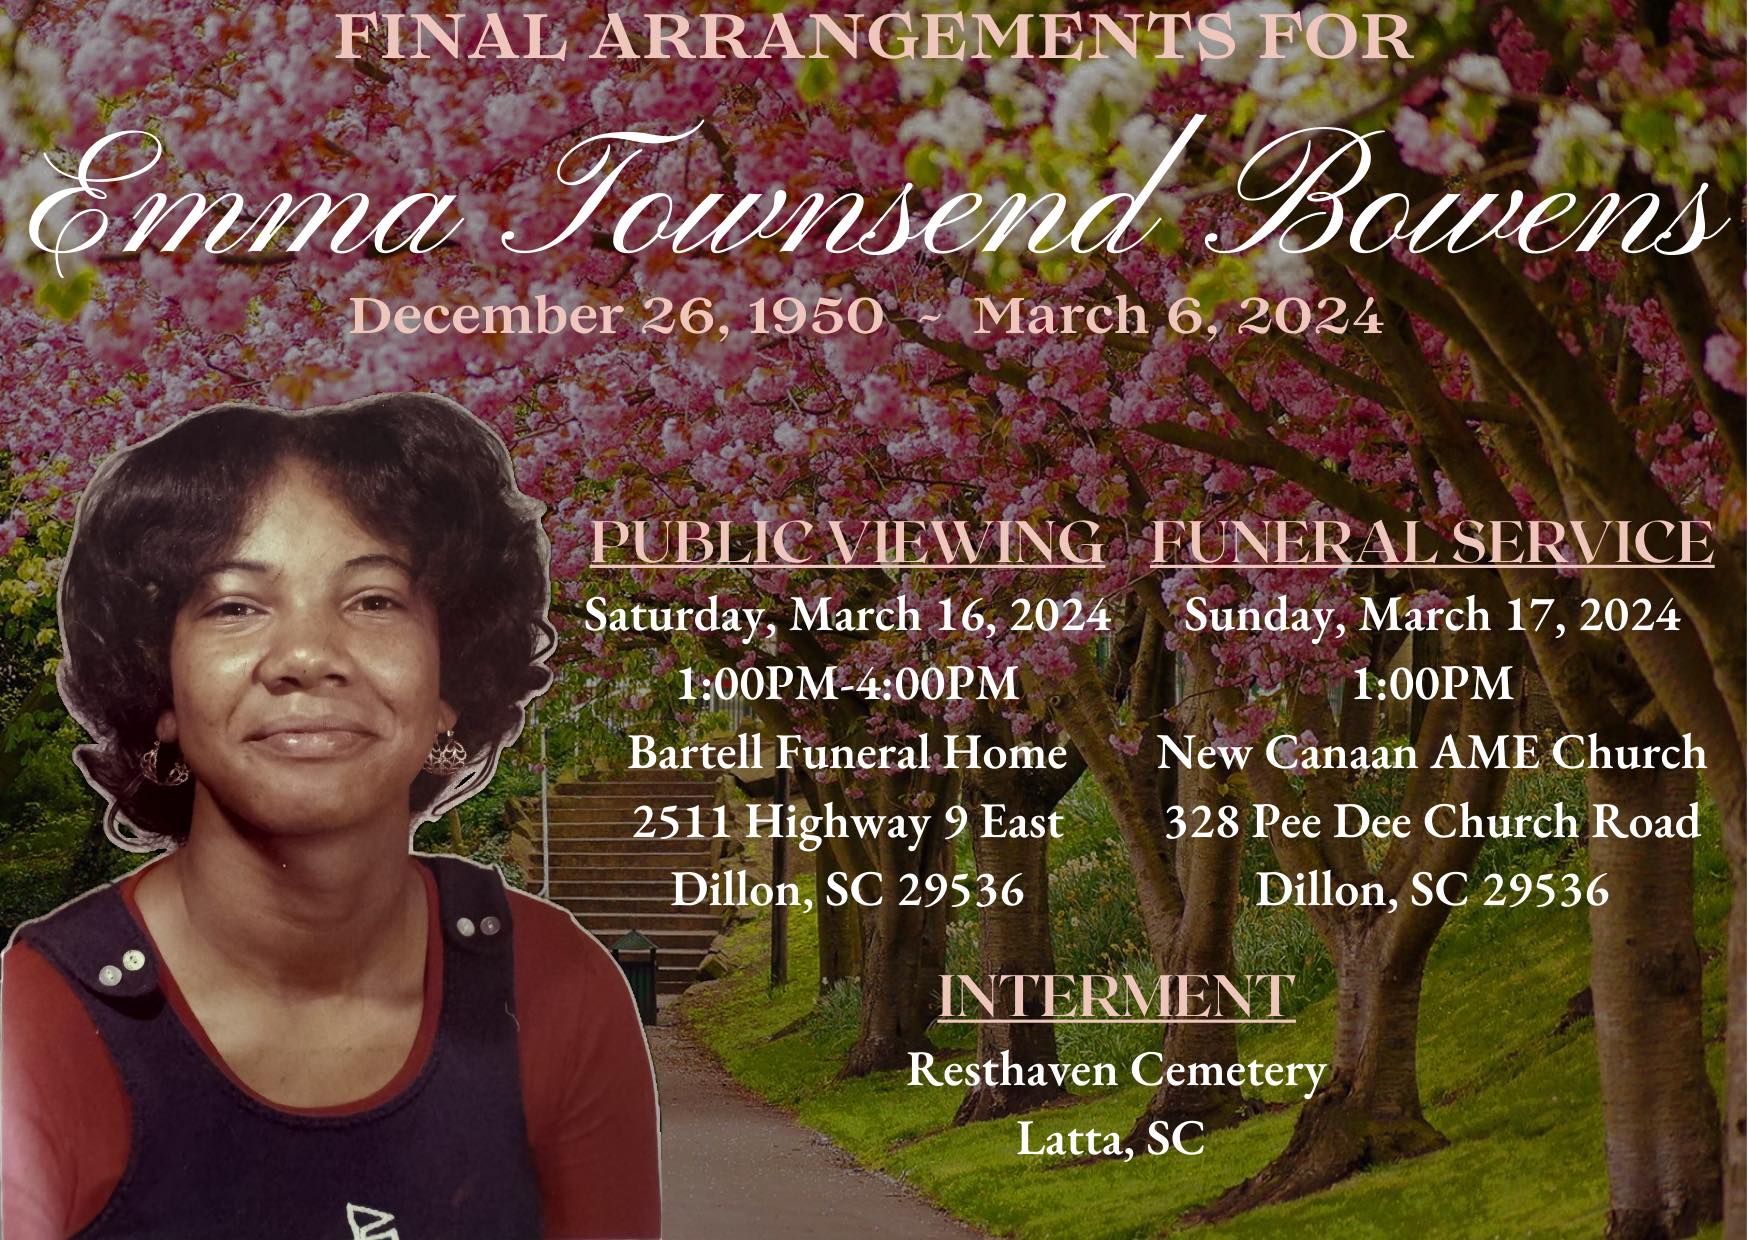 Bartell Funeral Home 2511 SC-9 E, Dillon South Carolina 29536